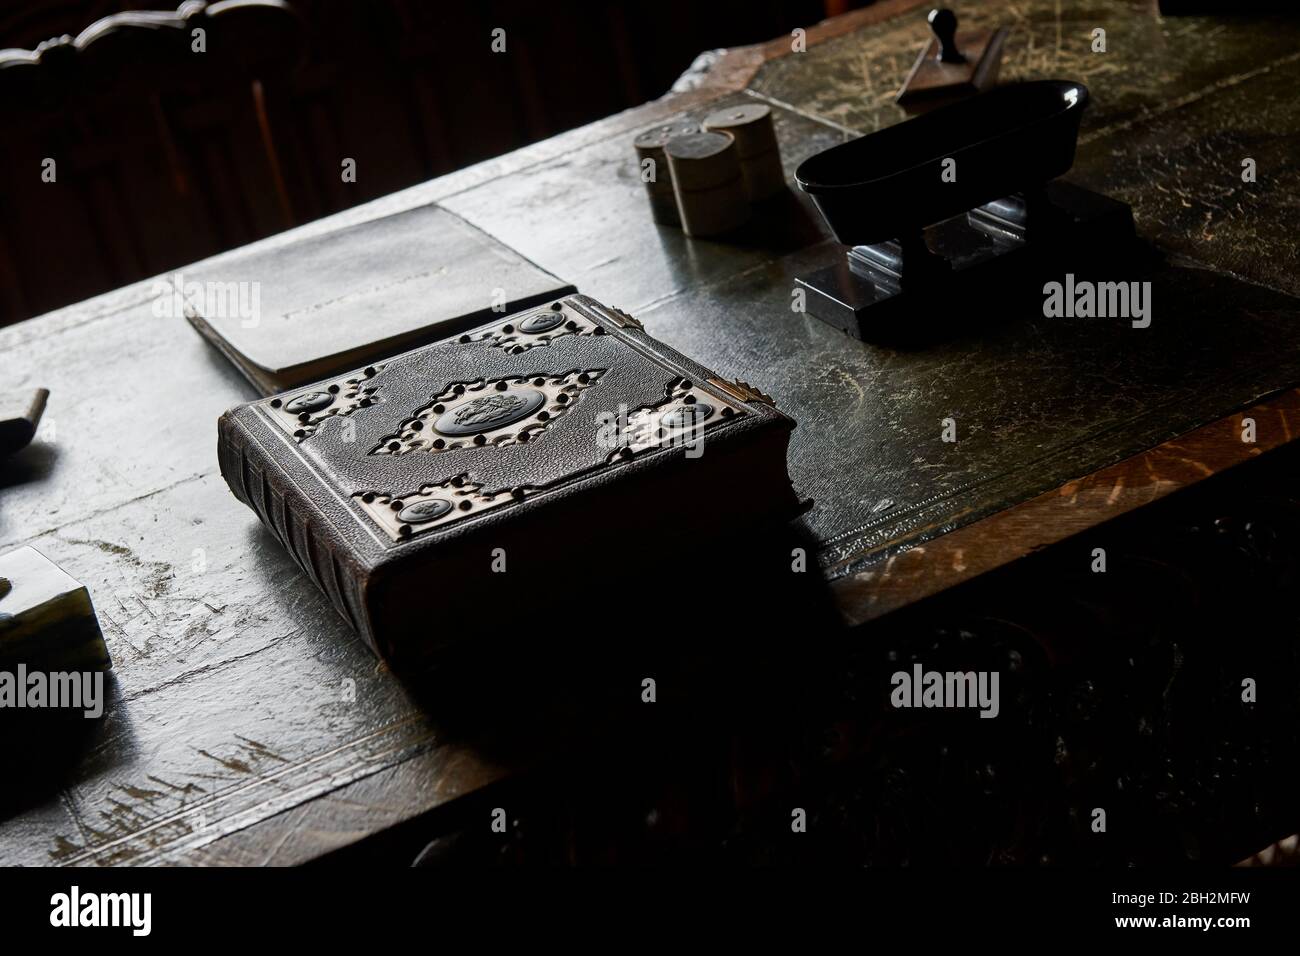 Antik ungeöffnetes großes gebundenes Buch auf einem alten Eichenschreibtisch Tisch in Tageslicht Stockfoto